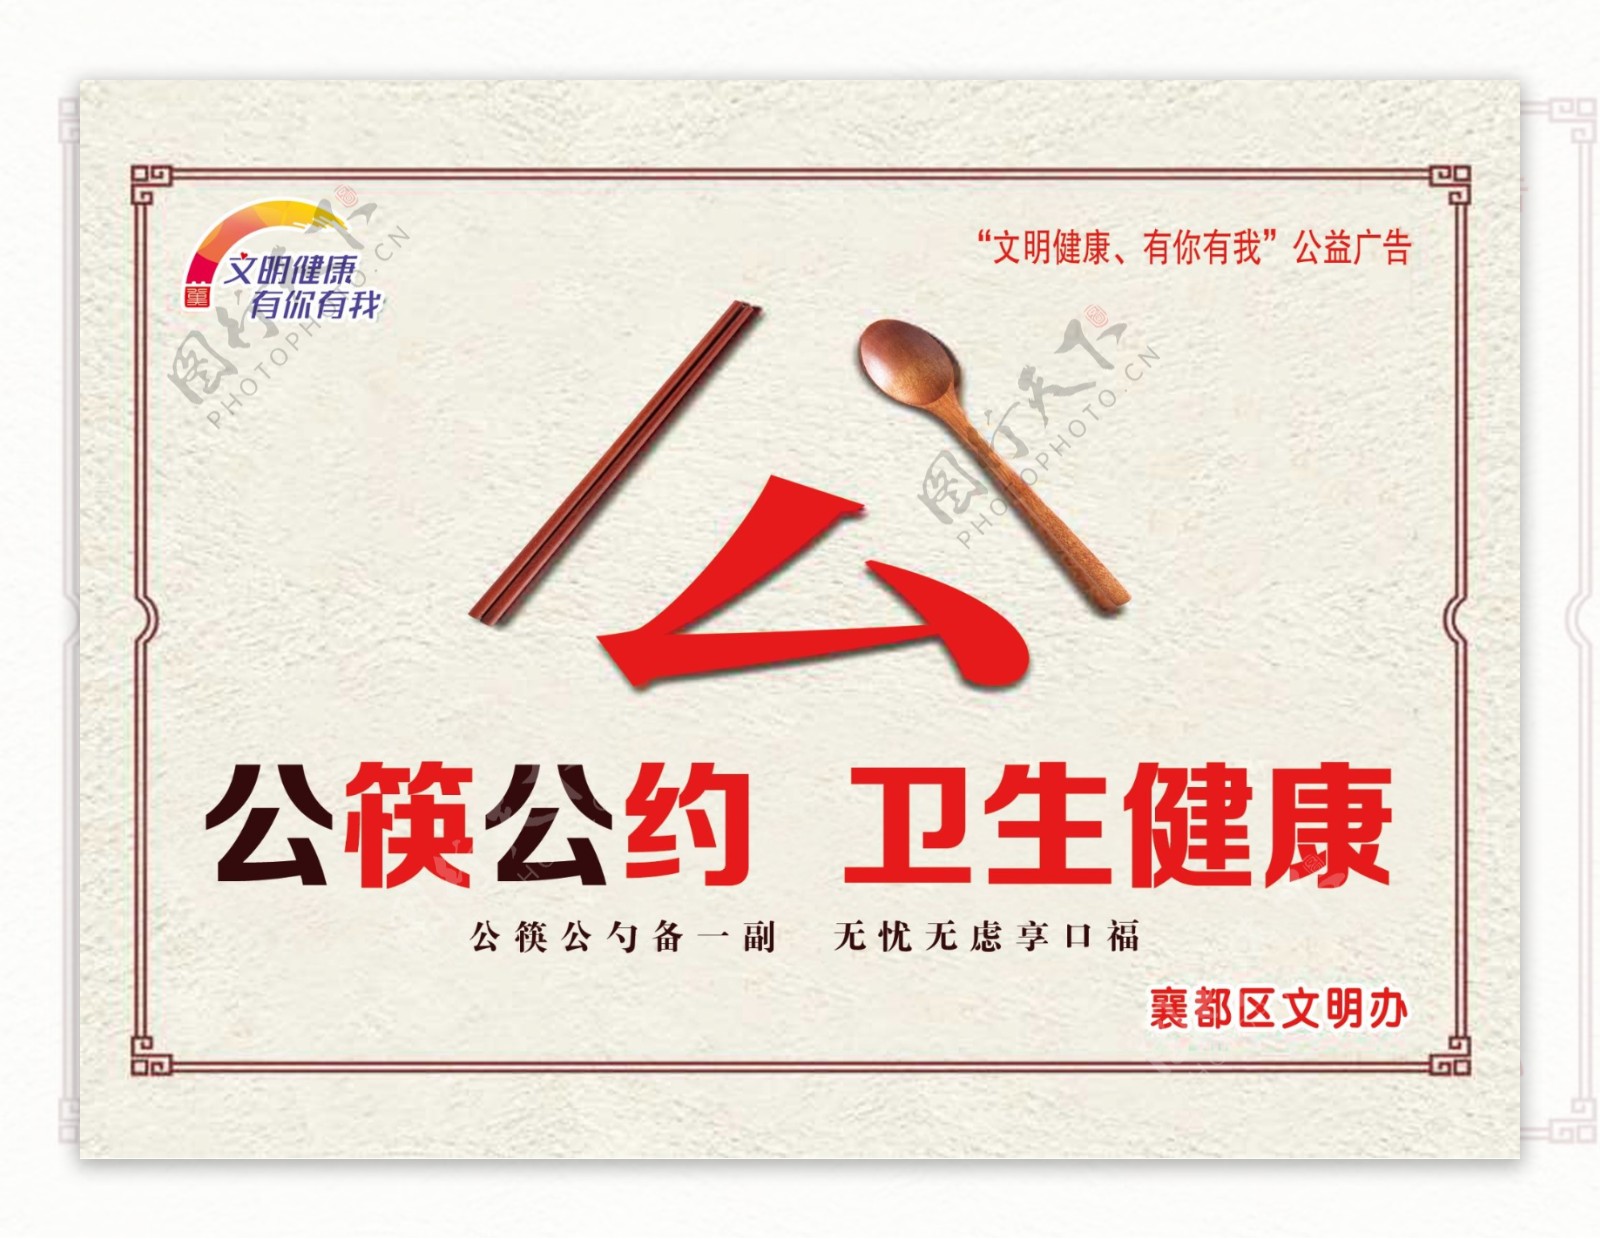 公筷公约卫生康康公益广告